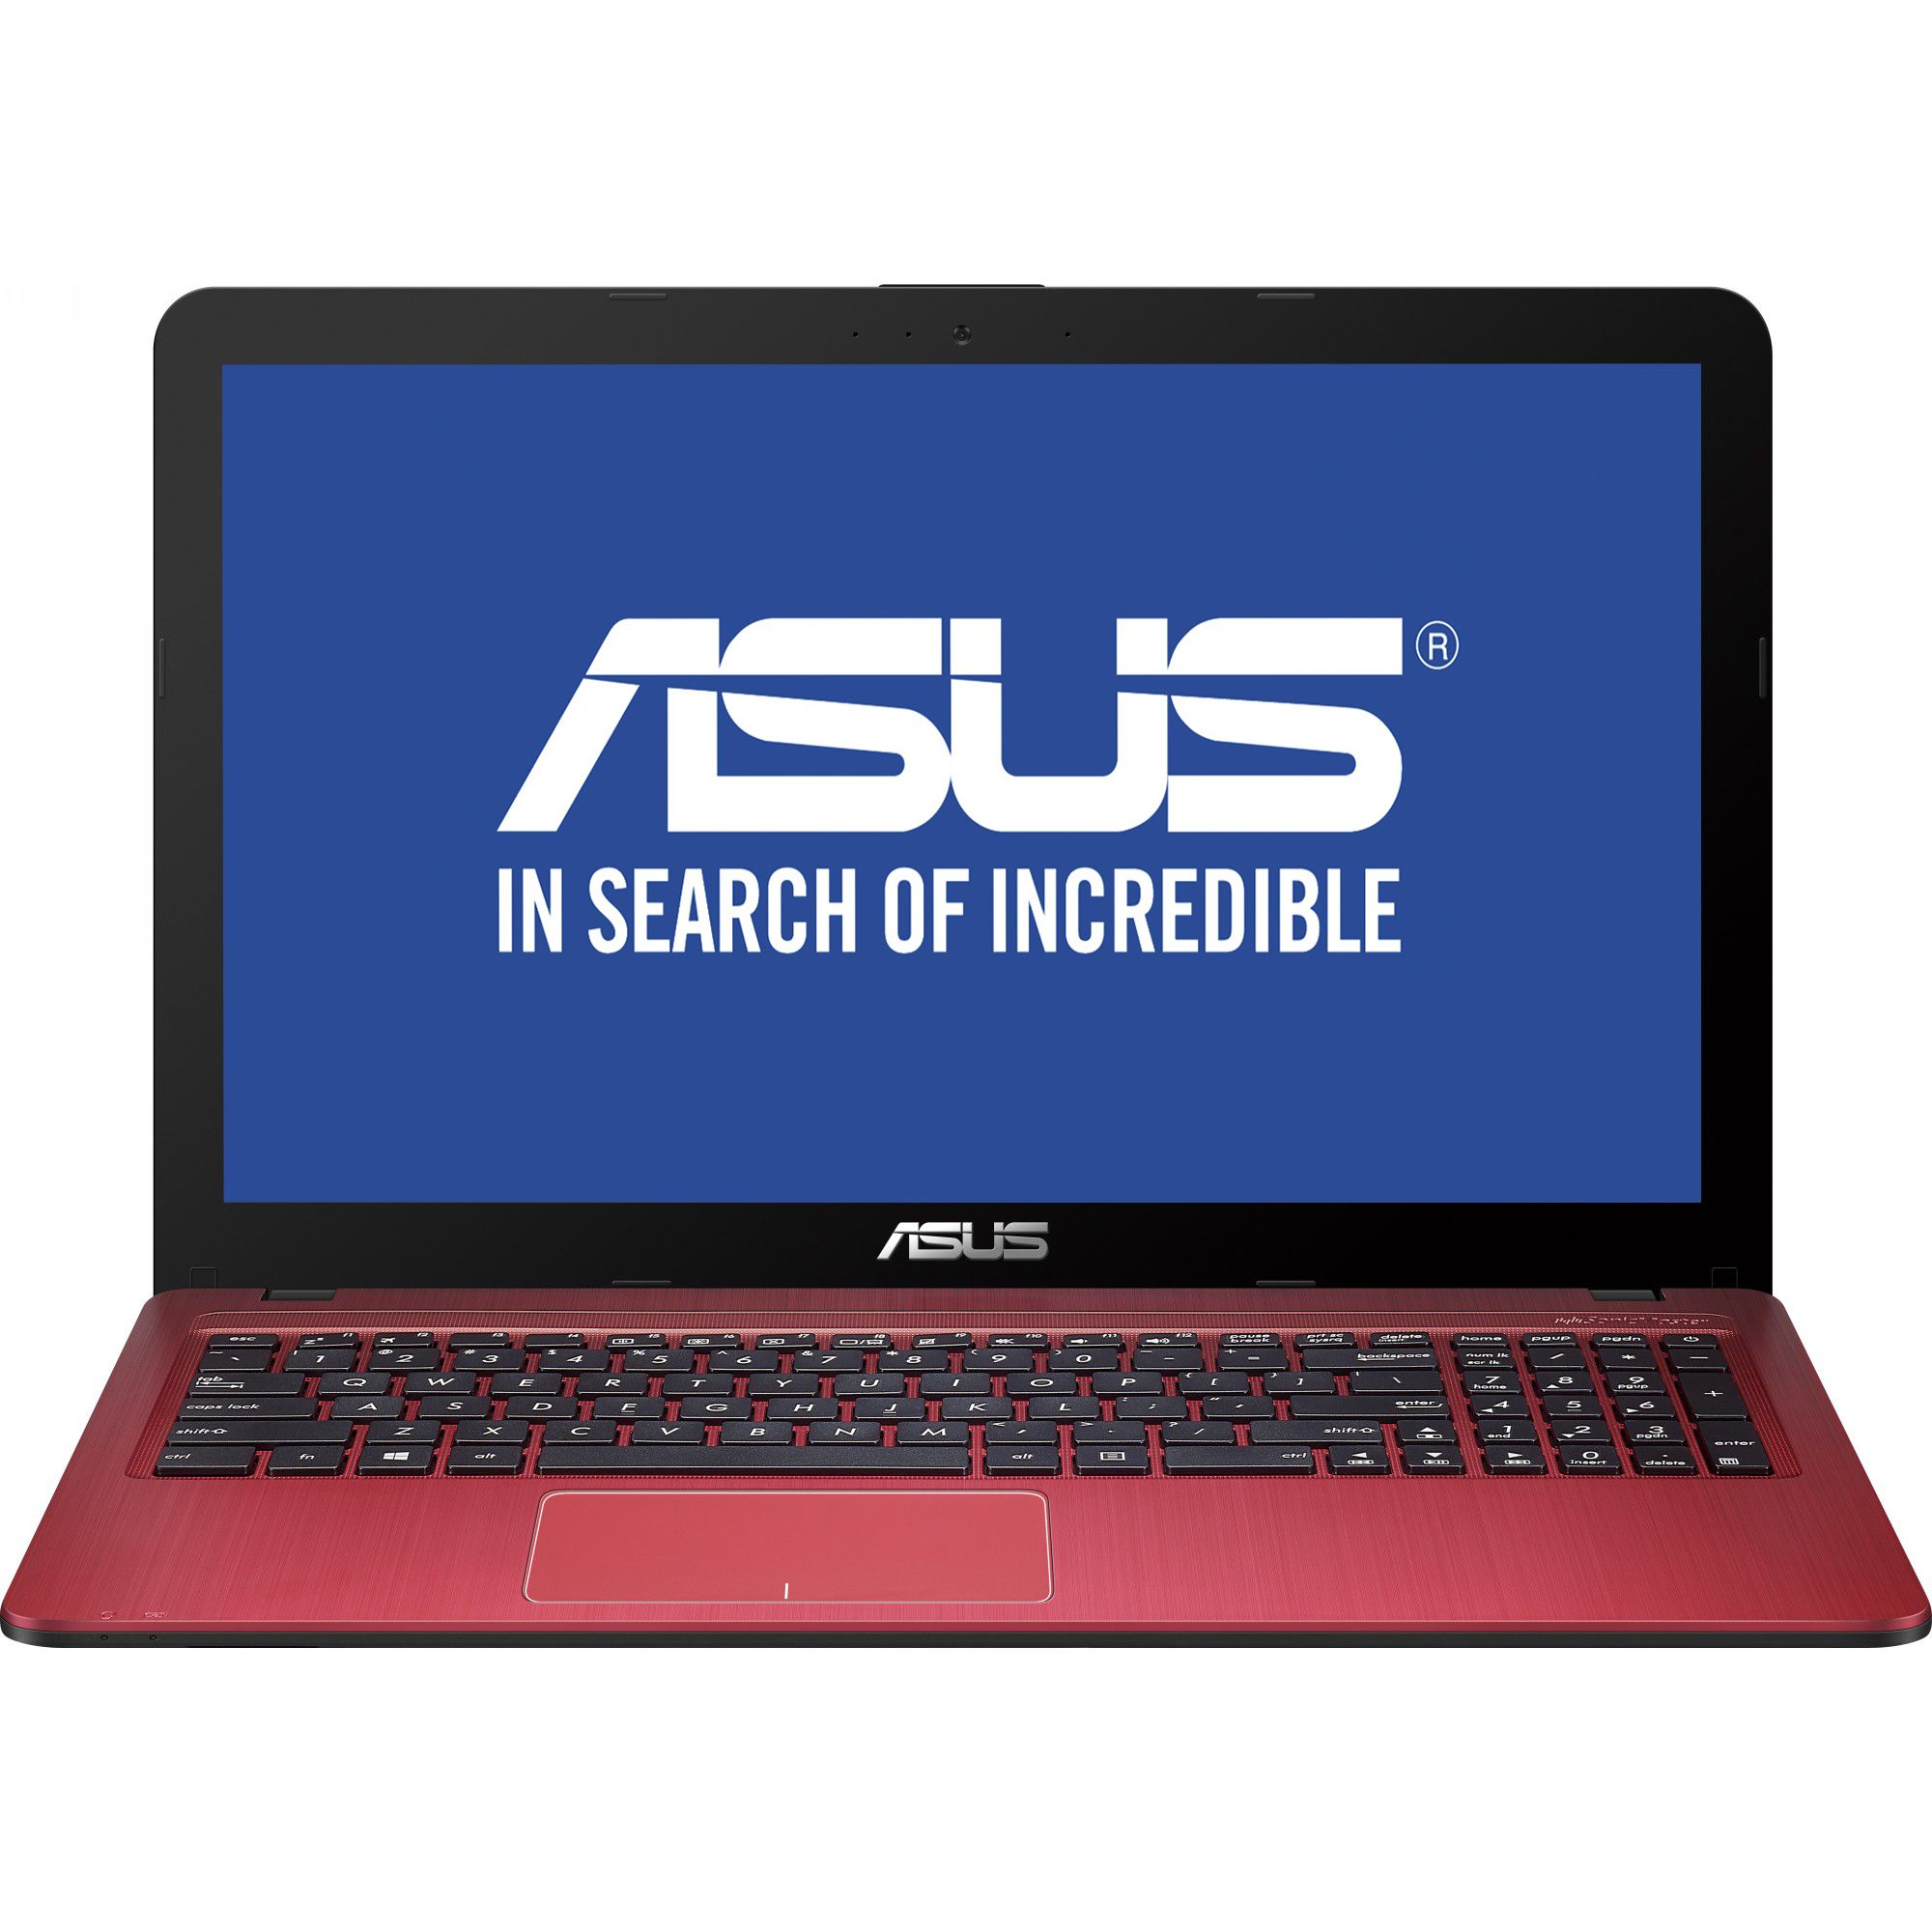  Laptop ASUS X540LJ-XX078D, Intel Core i3-4005U, 4GB DDR3, HDD 500GB, nVidia GeForce GT 920M 2GB, Free DOS 